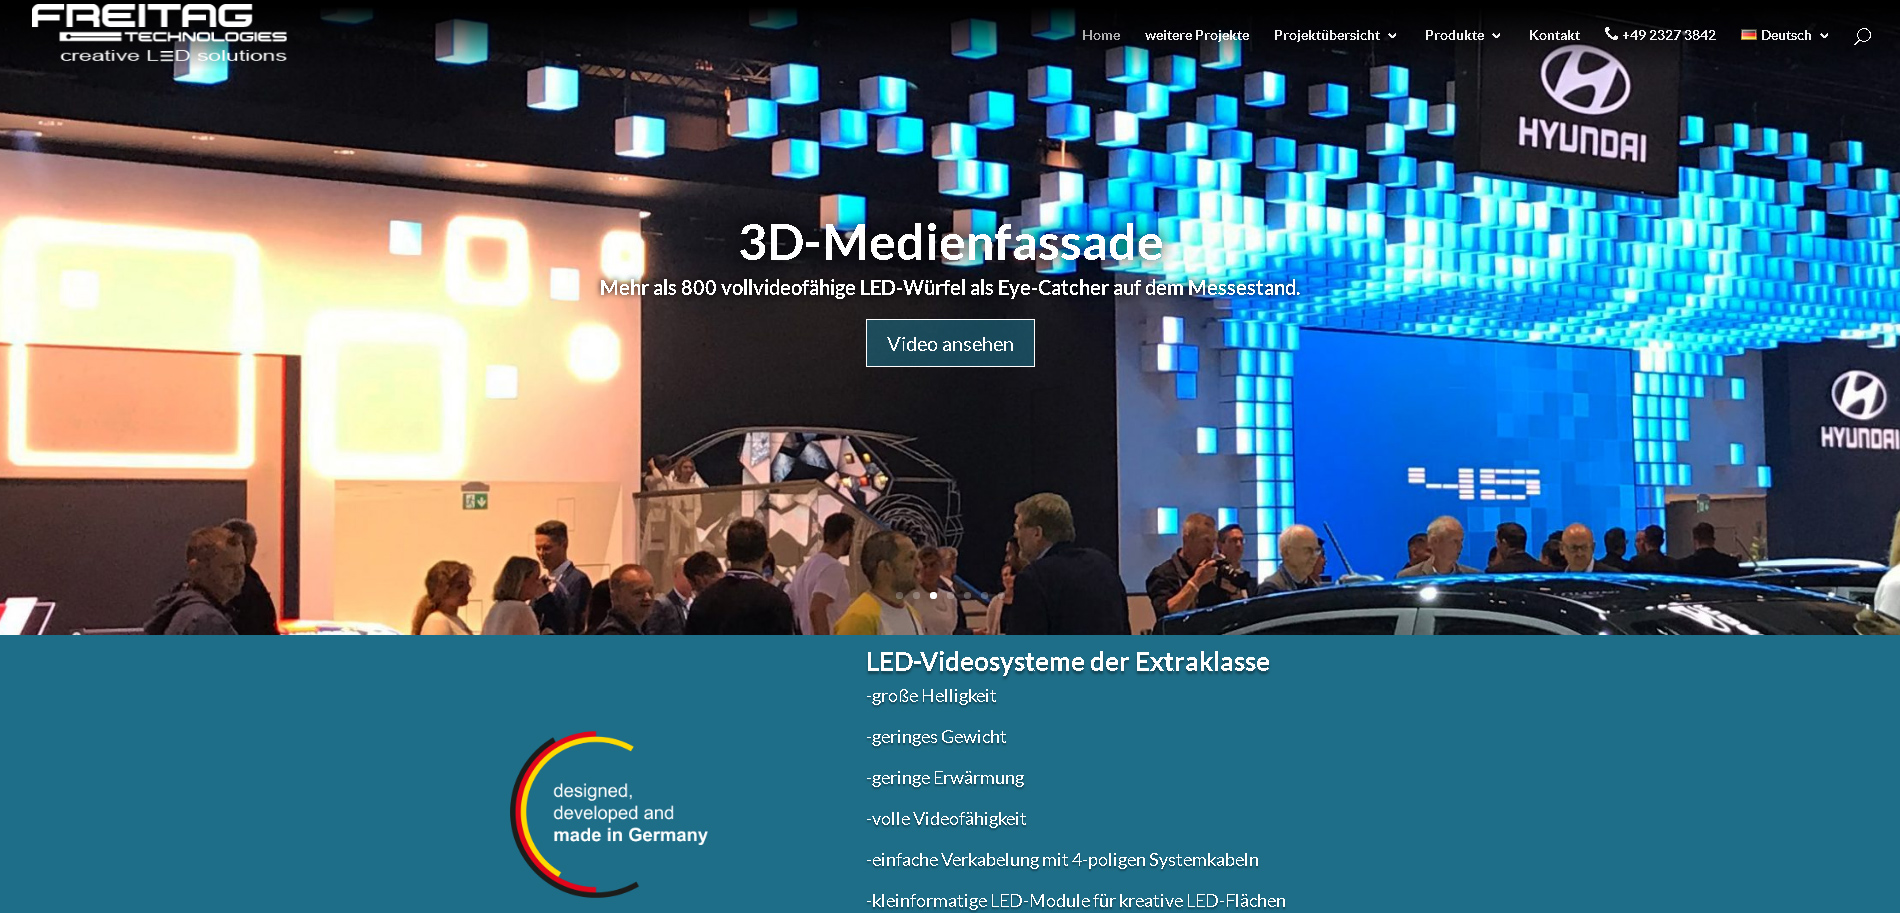 Screenshot der Website www.ledmedia.de mit kreativen LED Lösungen